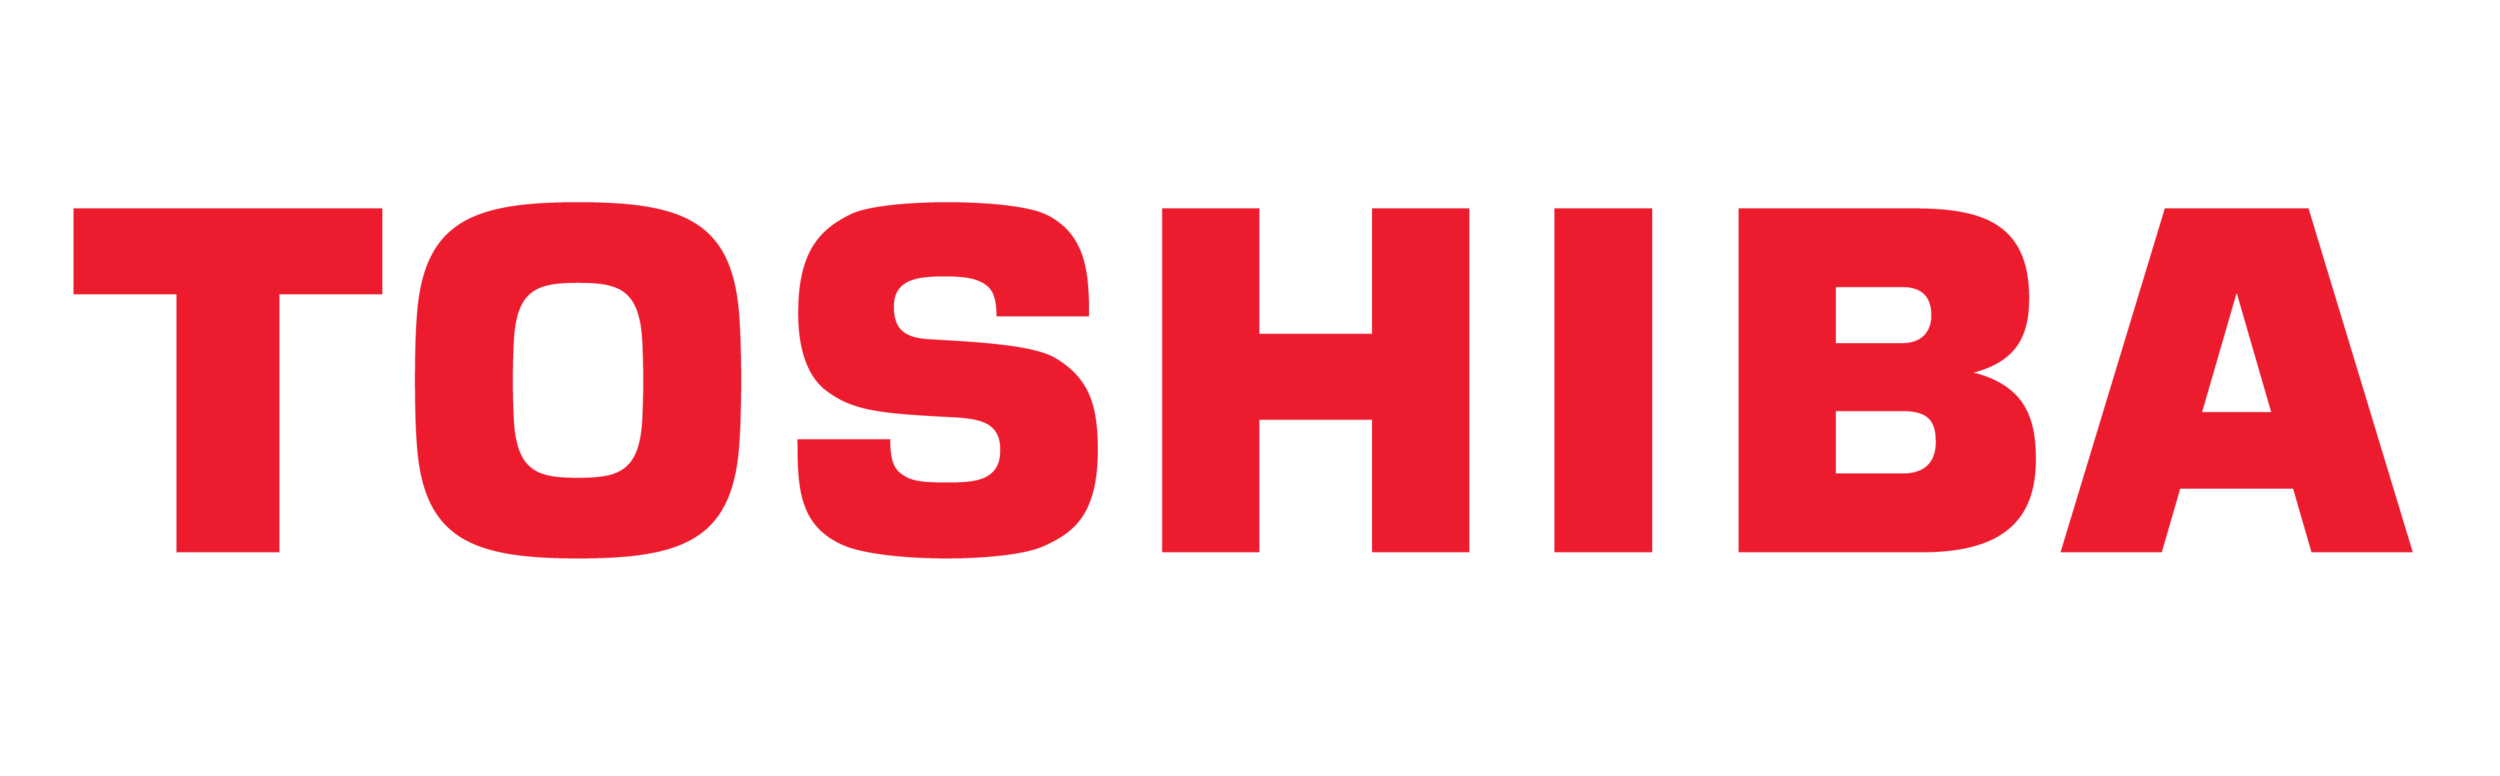 Toshiba-Logo.png